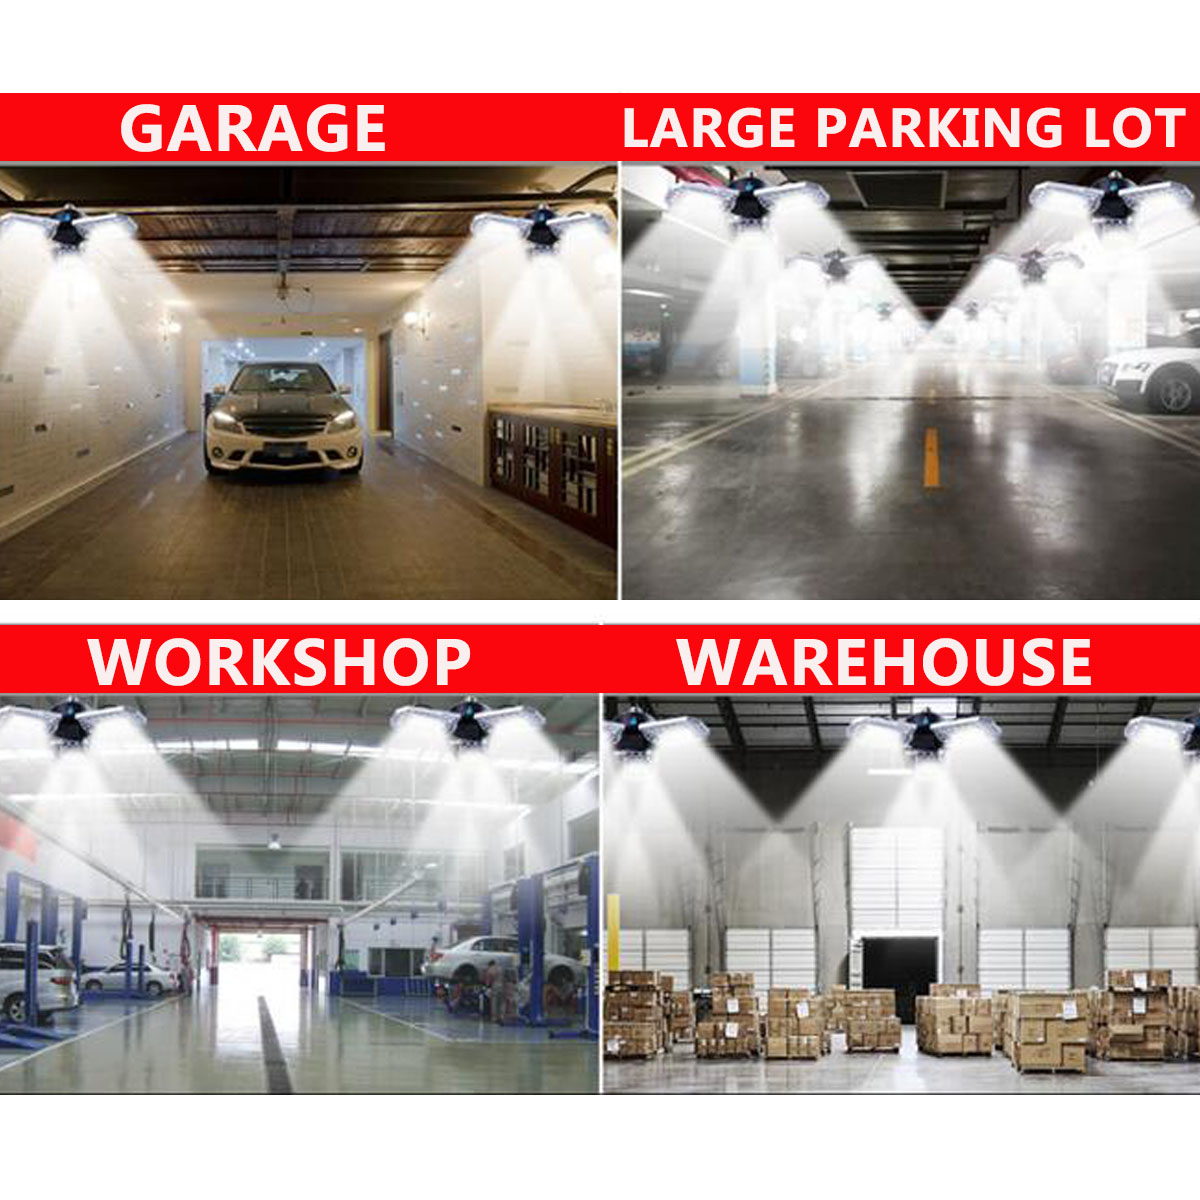 60W120W-85-265V-34-Deformable-LED-Garage-Lights-Workshop-Ceiling-Lamp-E26-E27-Base-1735754-10